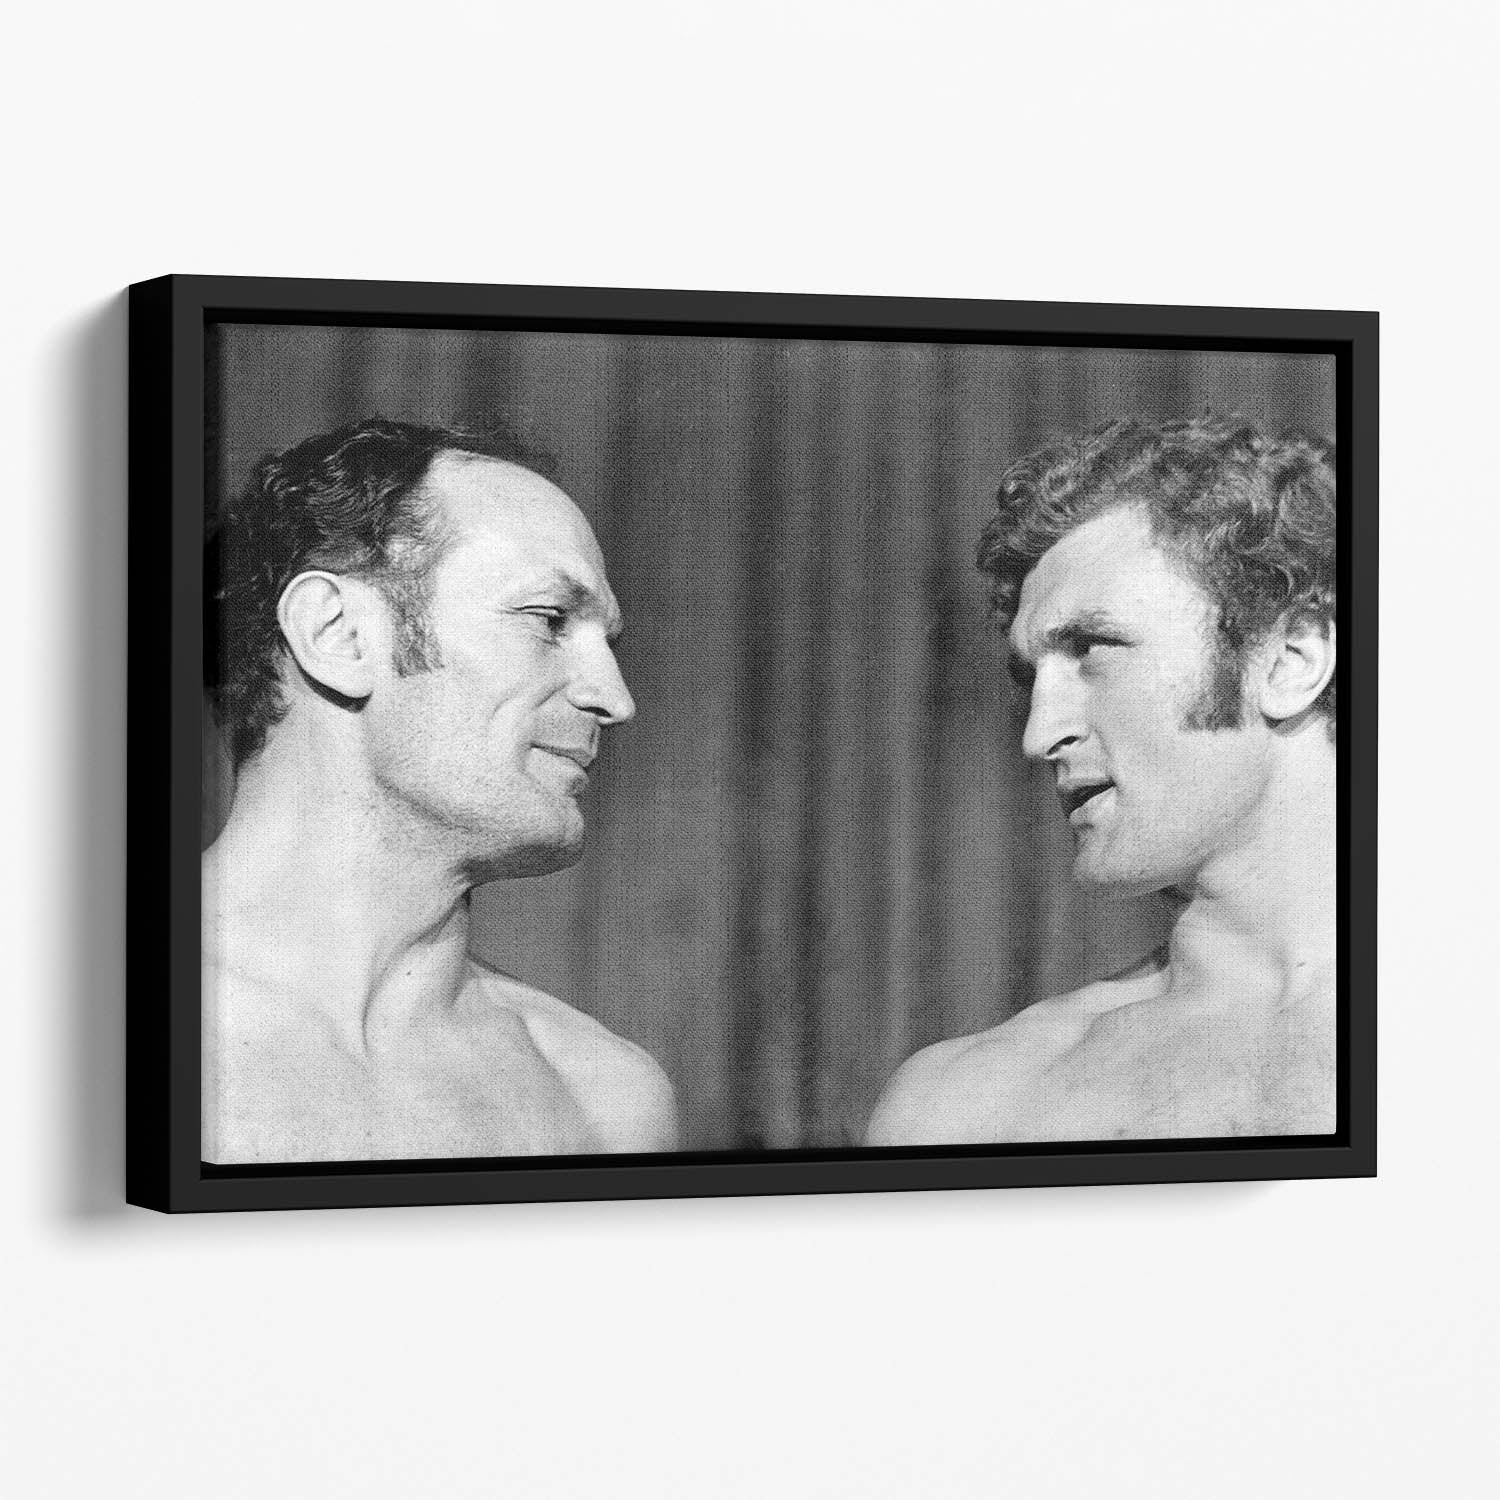 Boxers Henry Cooper and Joe Bugner Floating Framed Canvas